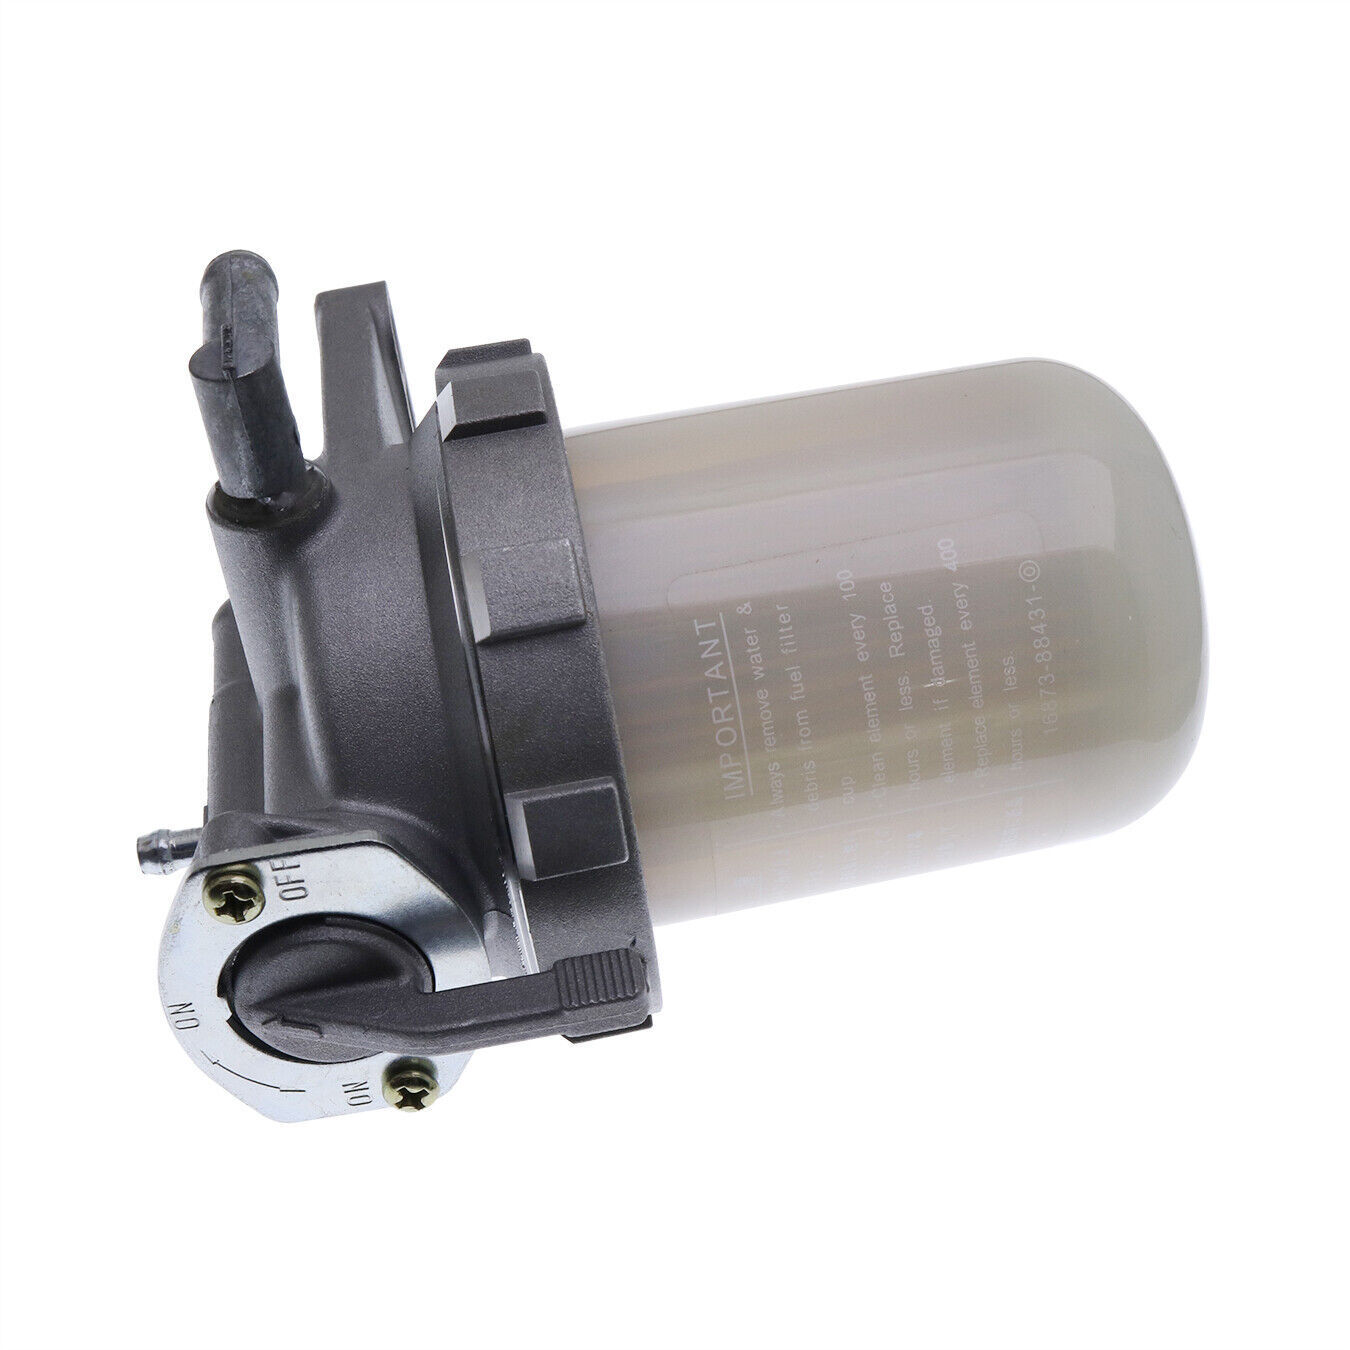 Fuel Filter For Kubota L4150 L3240 L3540 L3940 L2250 L4330 L2900 L45 L4600 L5030